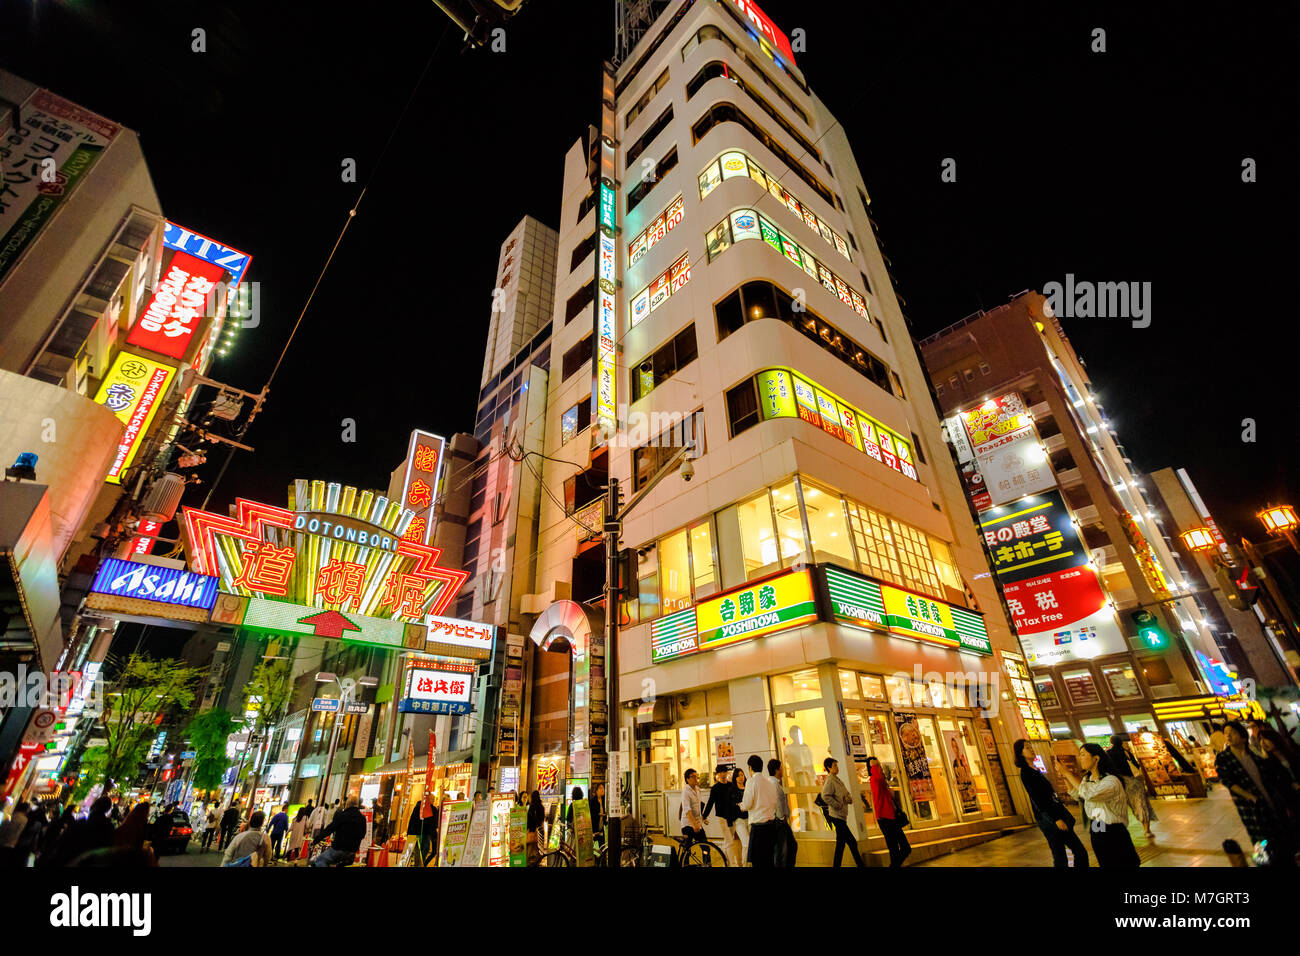 Osaka, Japan - 29. April 2017: Helles Neon von Dotonbori Schild am Eingang in Dotonbori Street, Namba Viertel. Es ist eine der wichtigsten touristischen Destinationen in Osaka, Japan. Nacht Szene. Stockfoto